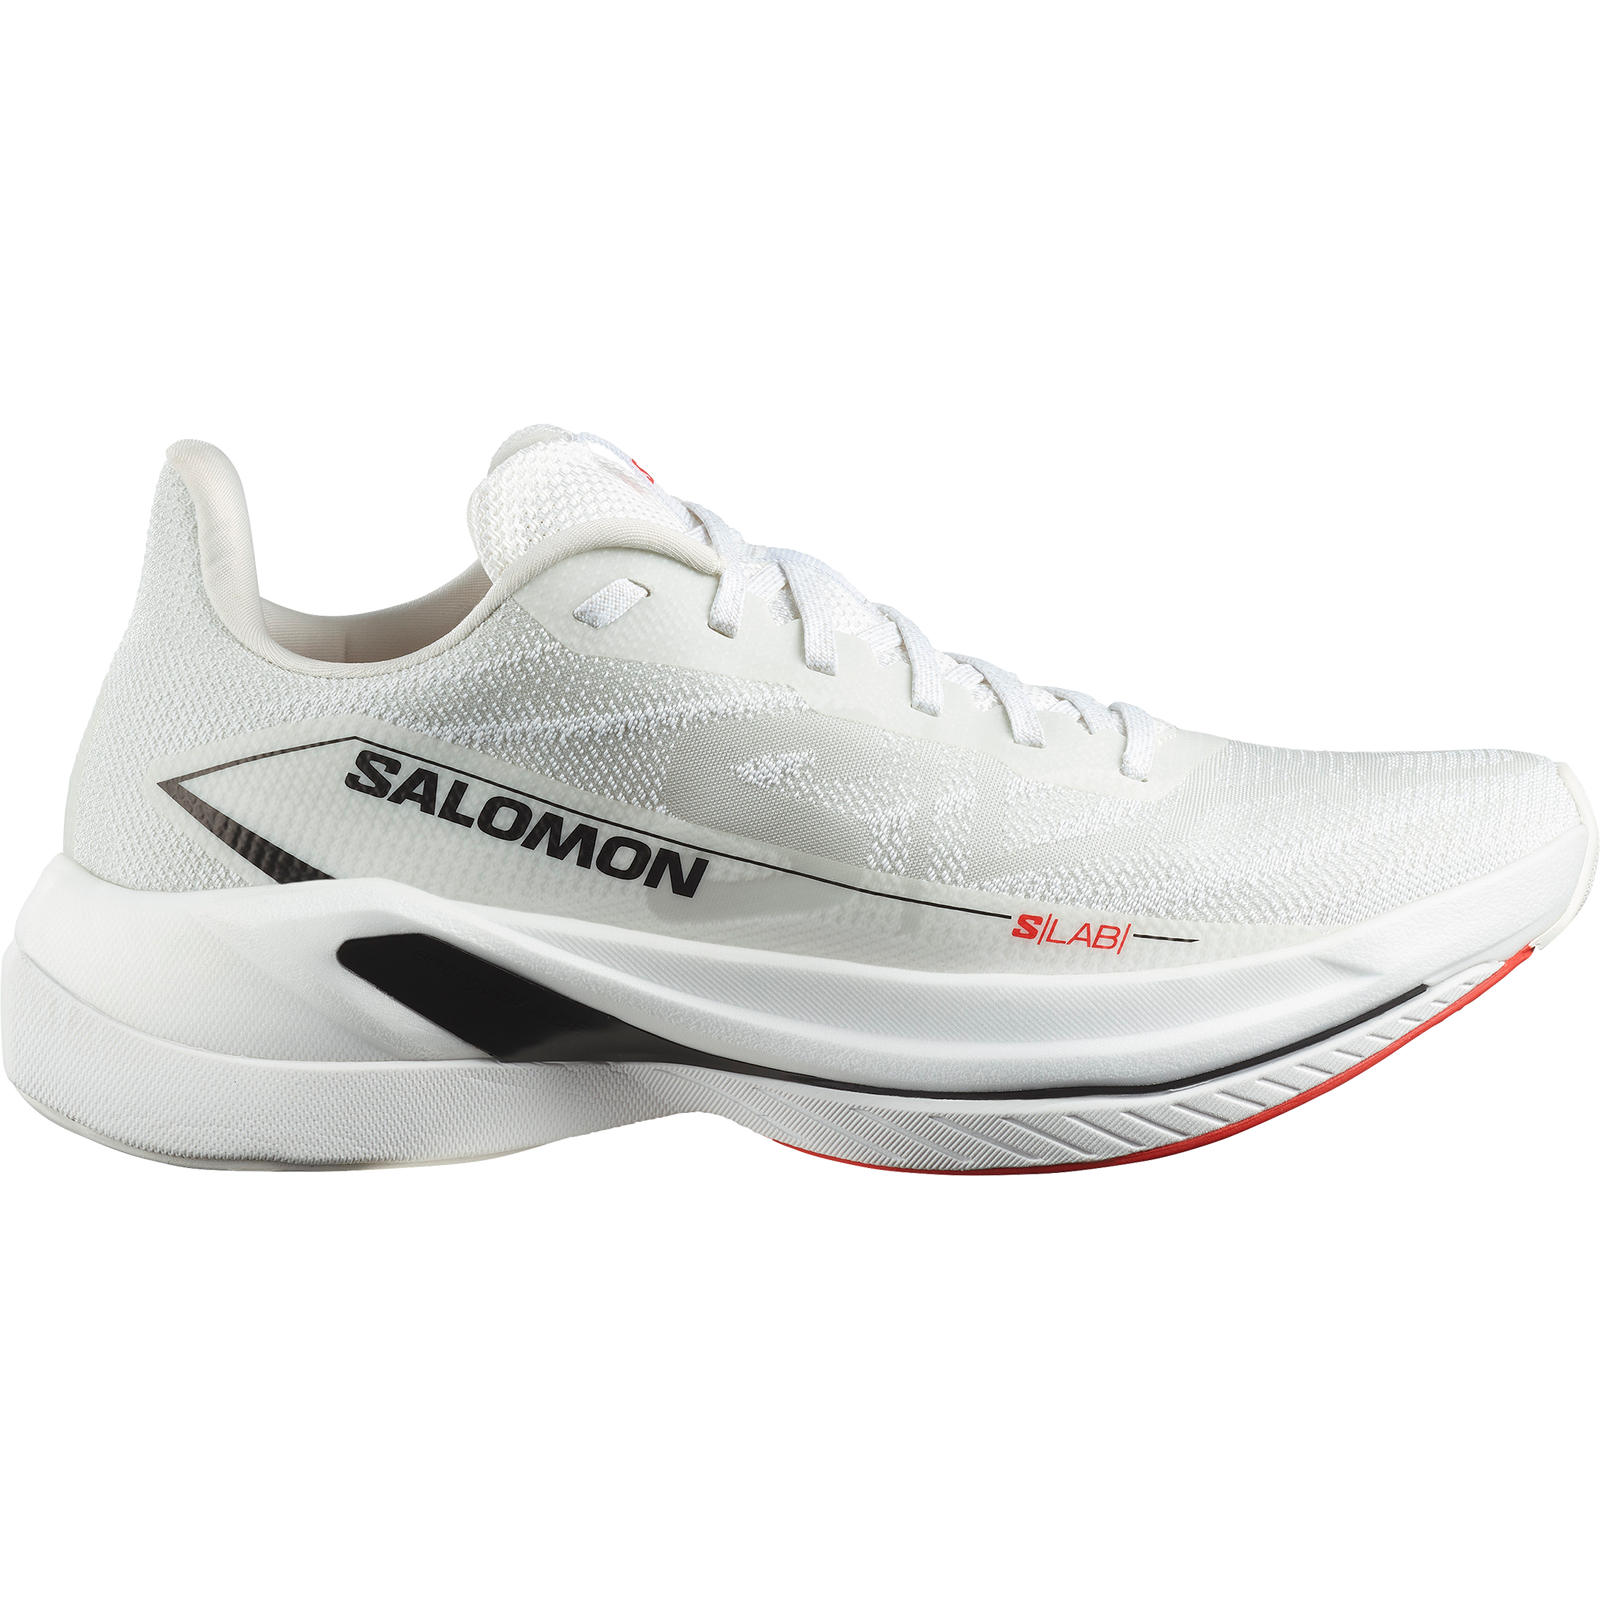 Salomon S/LAB Spectur Chaussures de course sur route unisexes